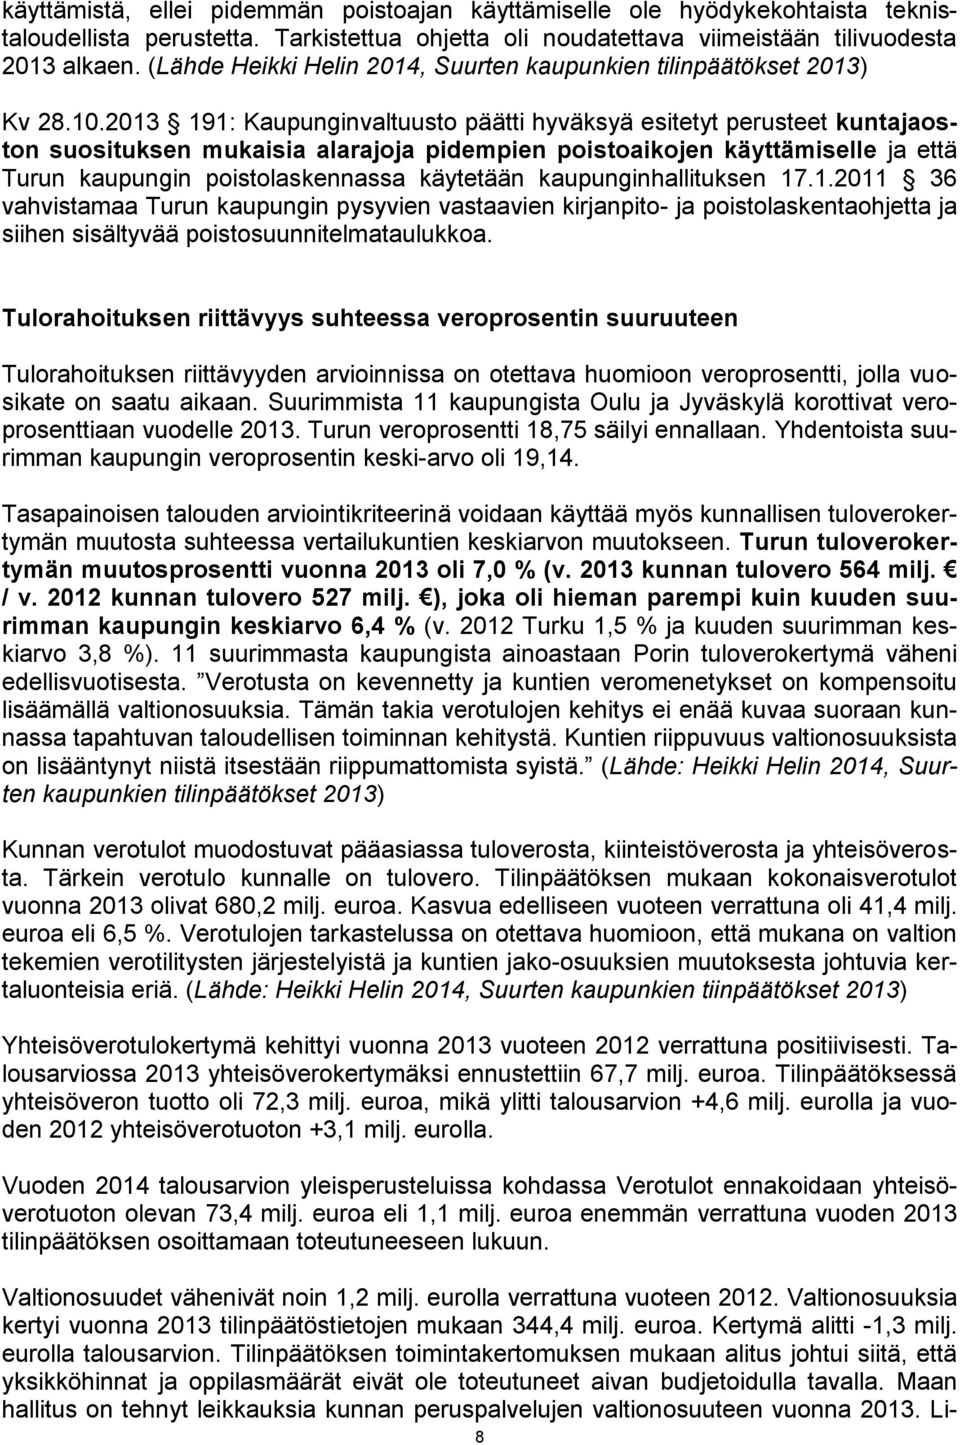 2013 191: Kaupunginvaltuusto päätti hyväksyä esitetyt perusteet kuntajaoston suosituksen mukaisia alarajoja pidempien poistoaikojen käyttämiselle ja että Turun kaupungin poistolaskennassa käytetään